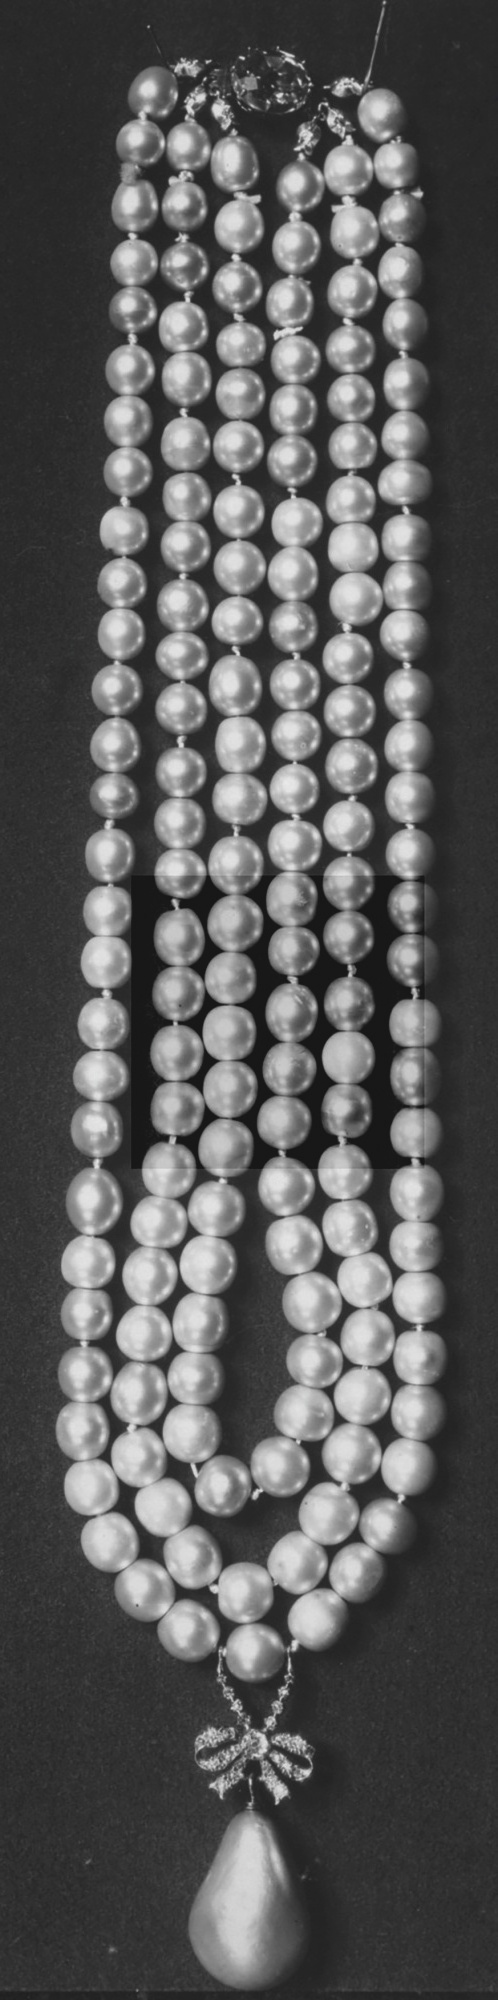 Quatre perles parmi les plus célèbres au monde : La Régente (Perle Napoléon), La Pélégrina, La Pérégrina, La perle de Marie-Antoinette - Page 2 Collie13